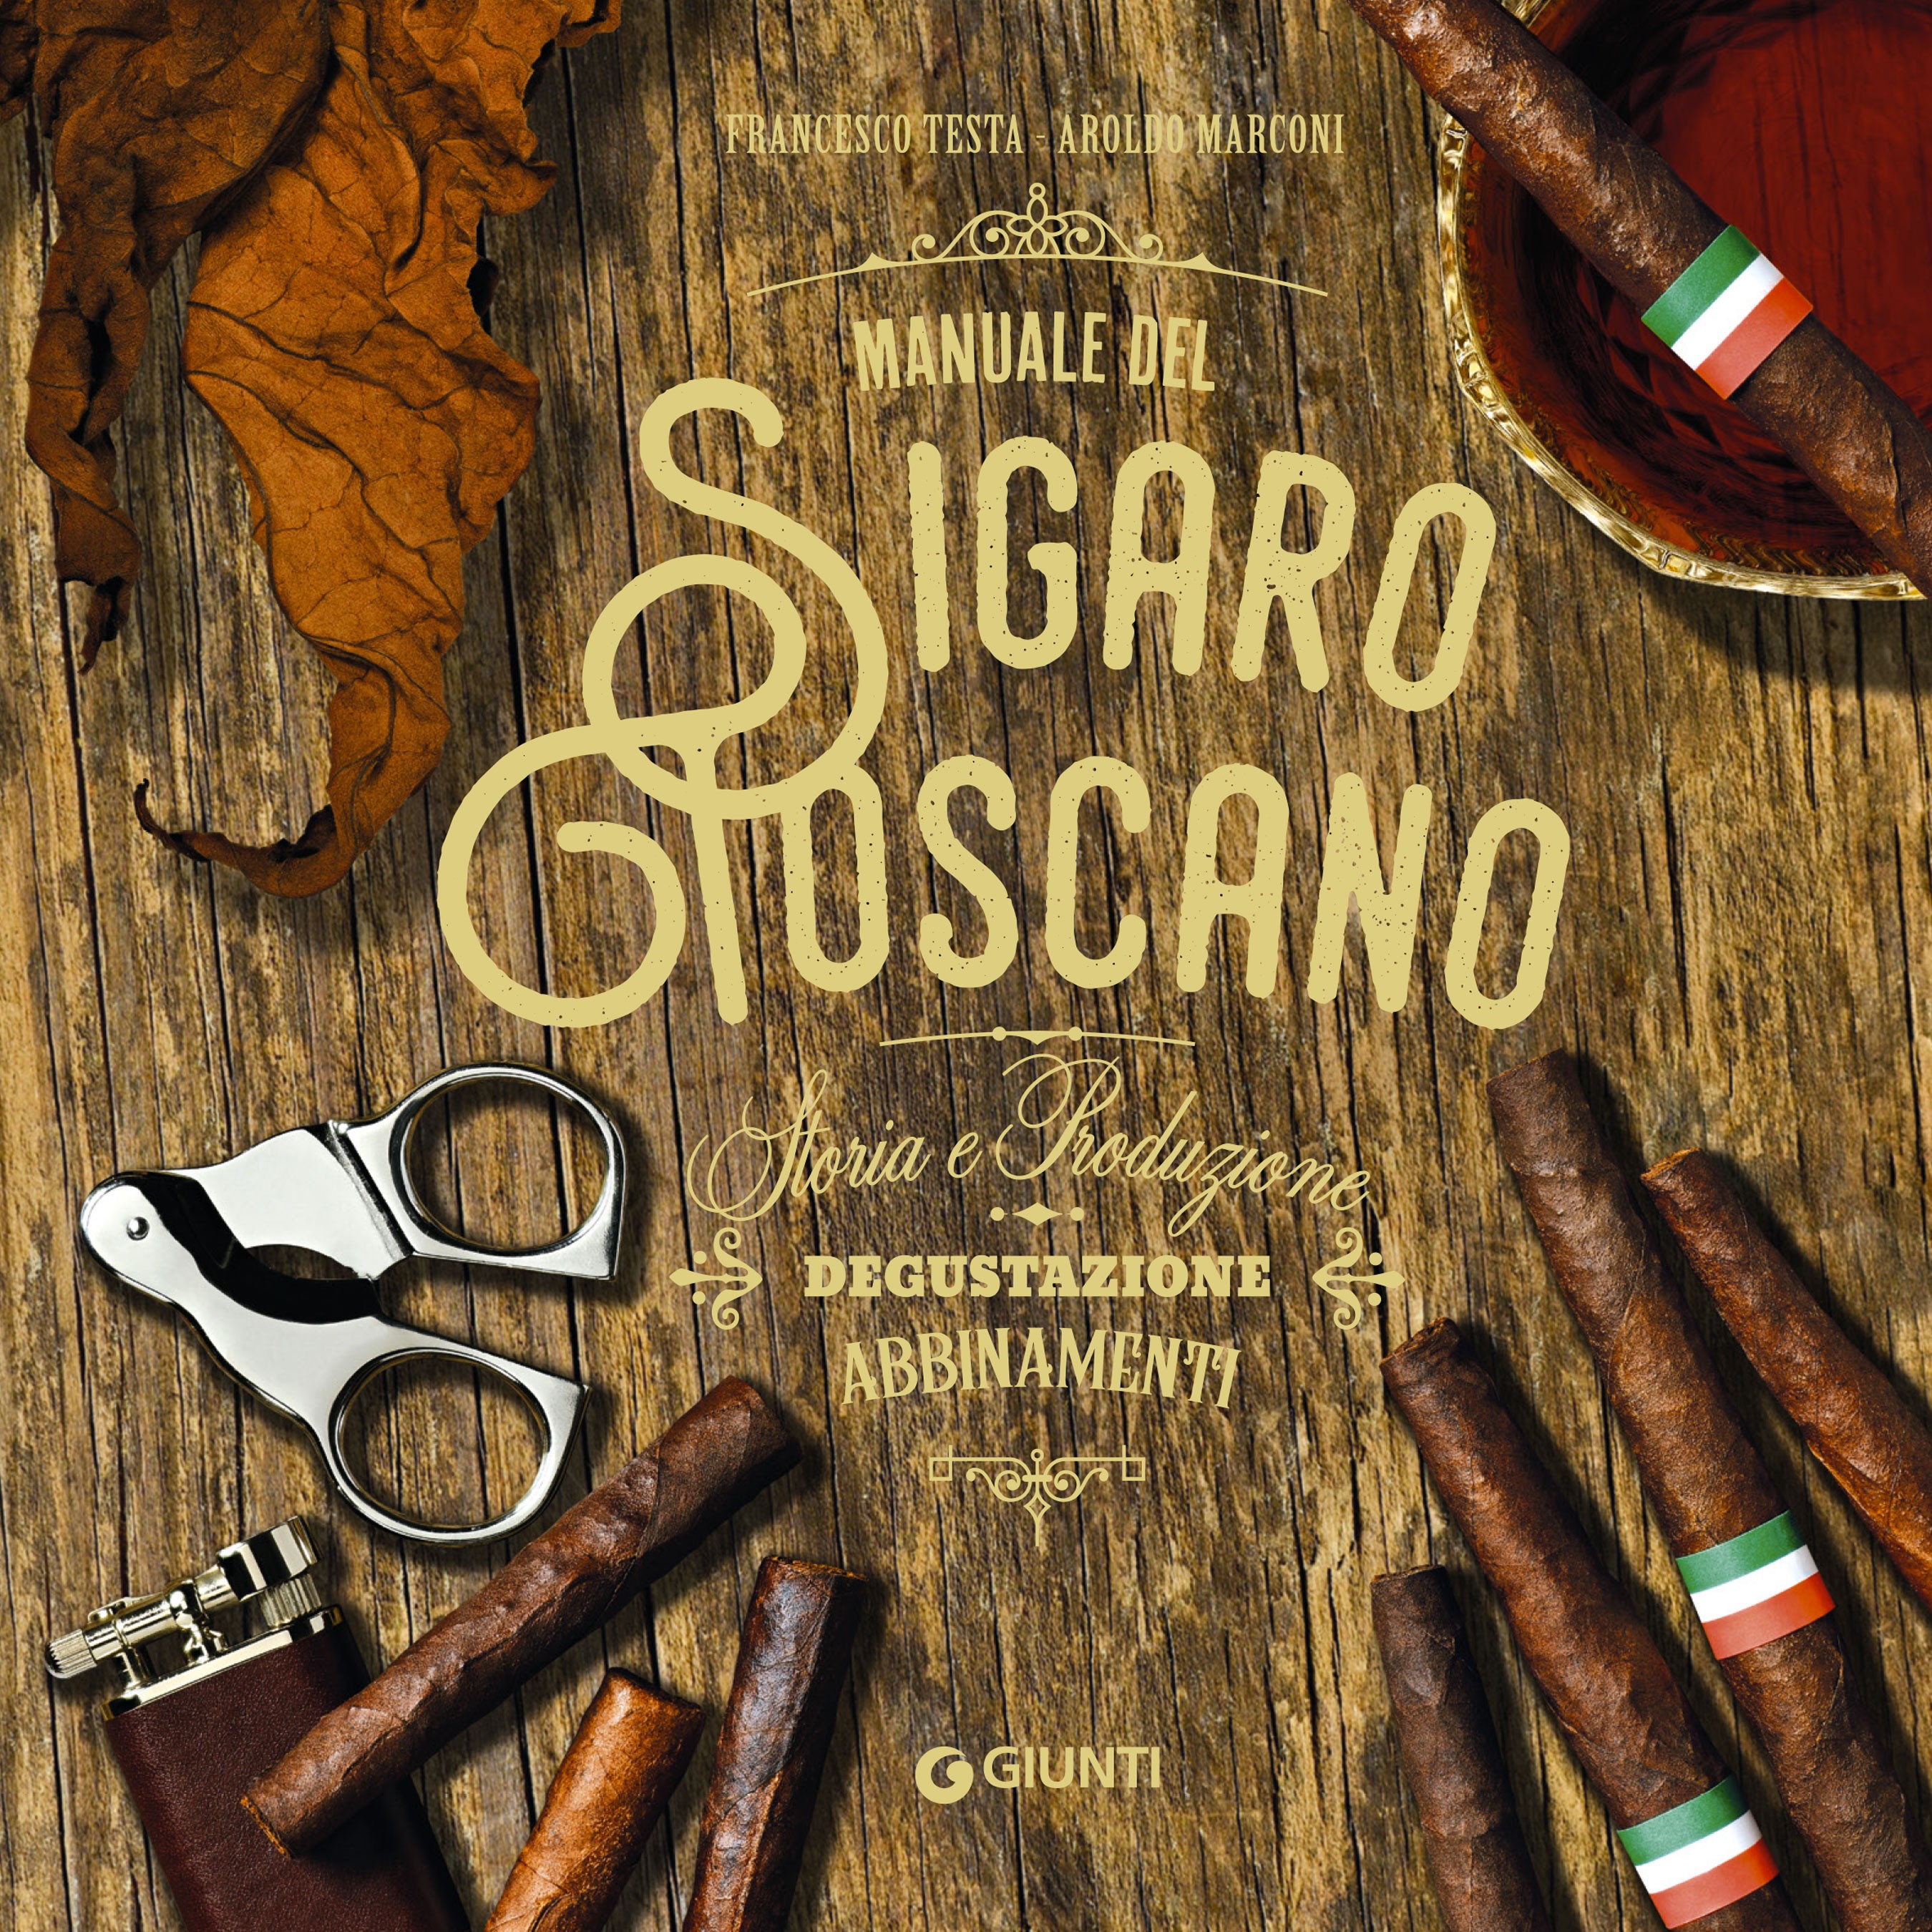 Manuale del sigaro toscano - Librerie.coop